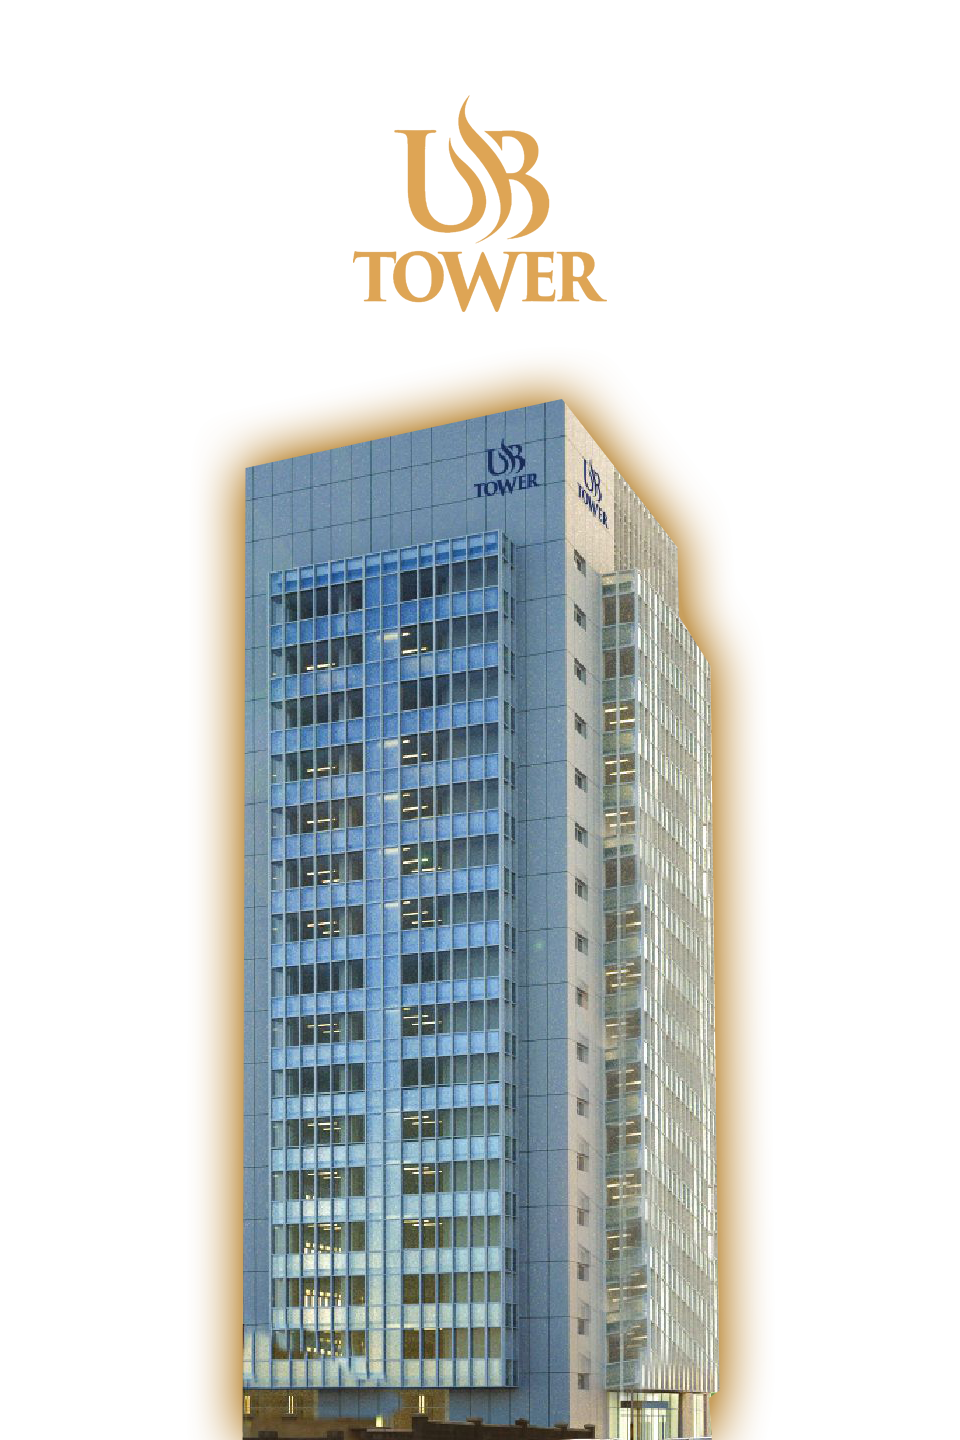 UB Tower